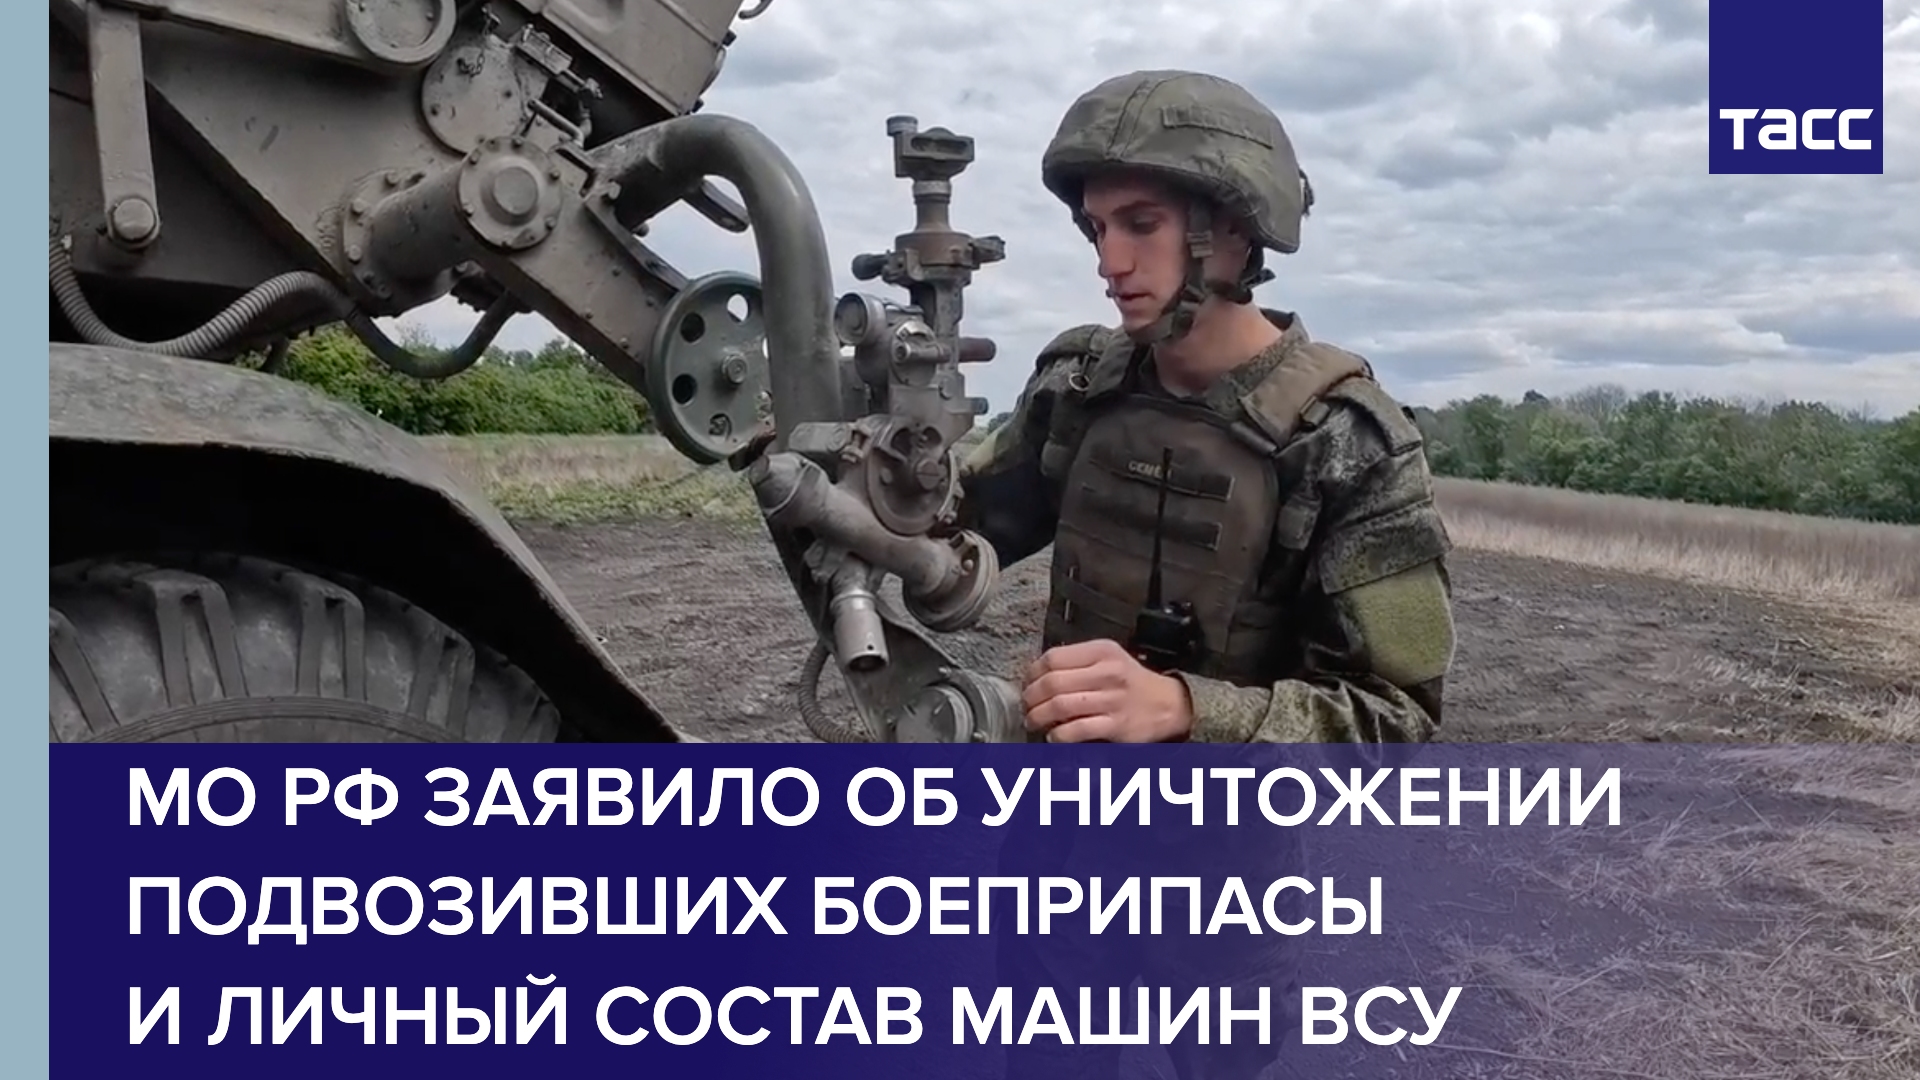 МО РФ заявило об уничтожении подвозивших боеприпасы и личный состав машин ВСУ